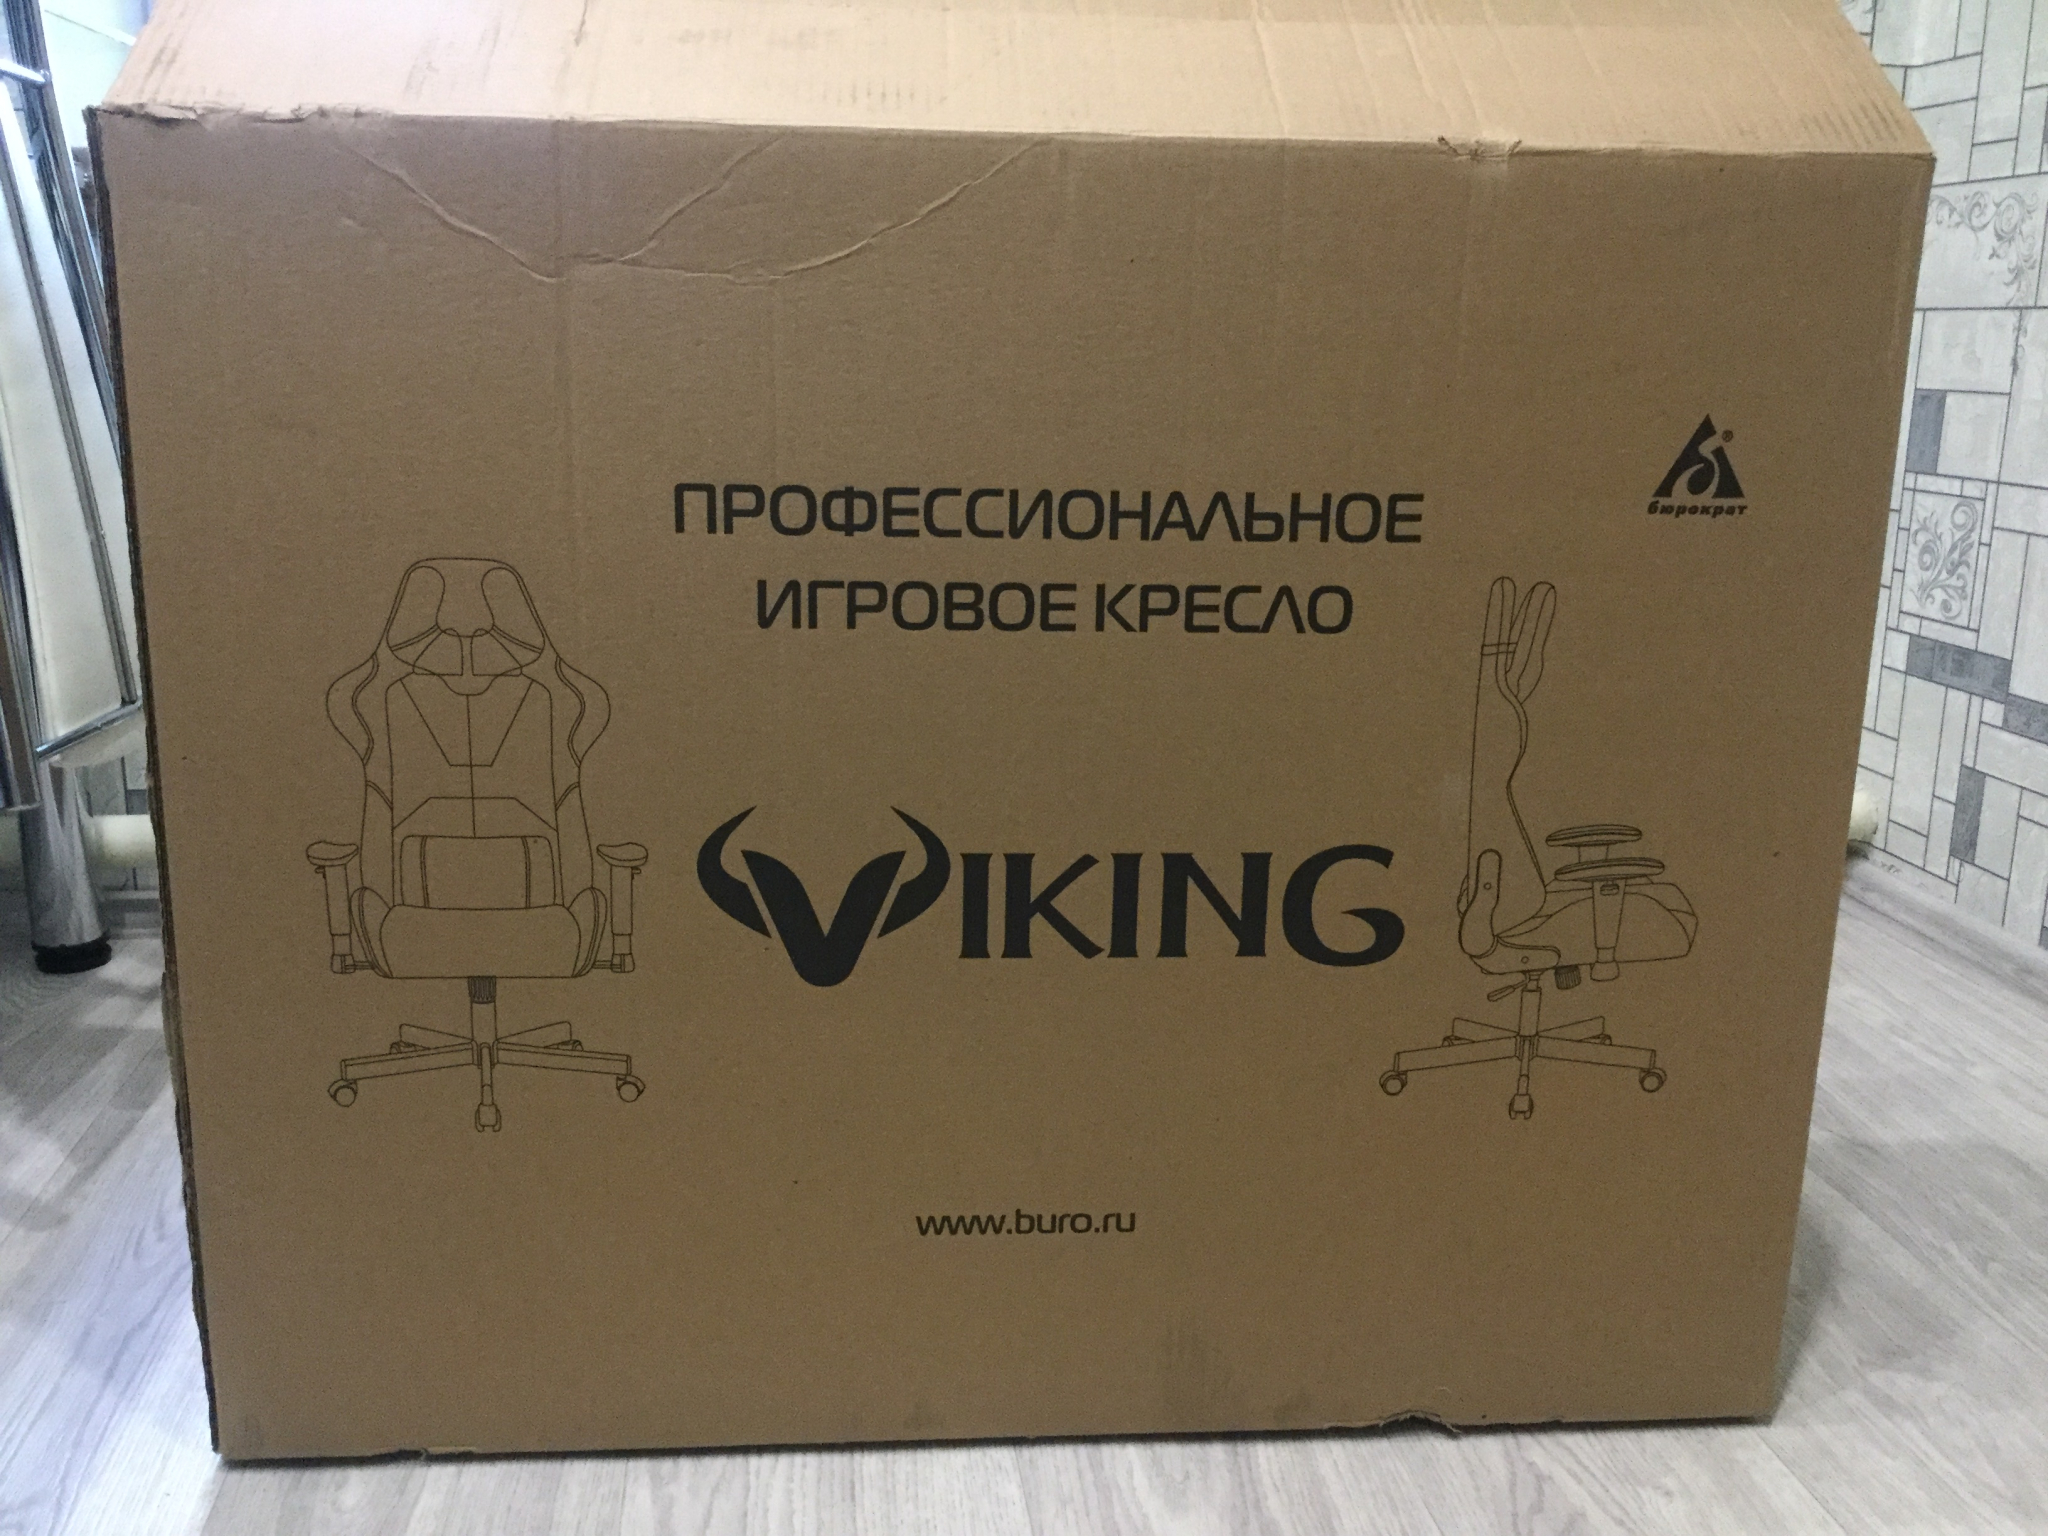 Коробка от кресла Викинг